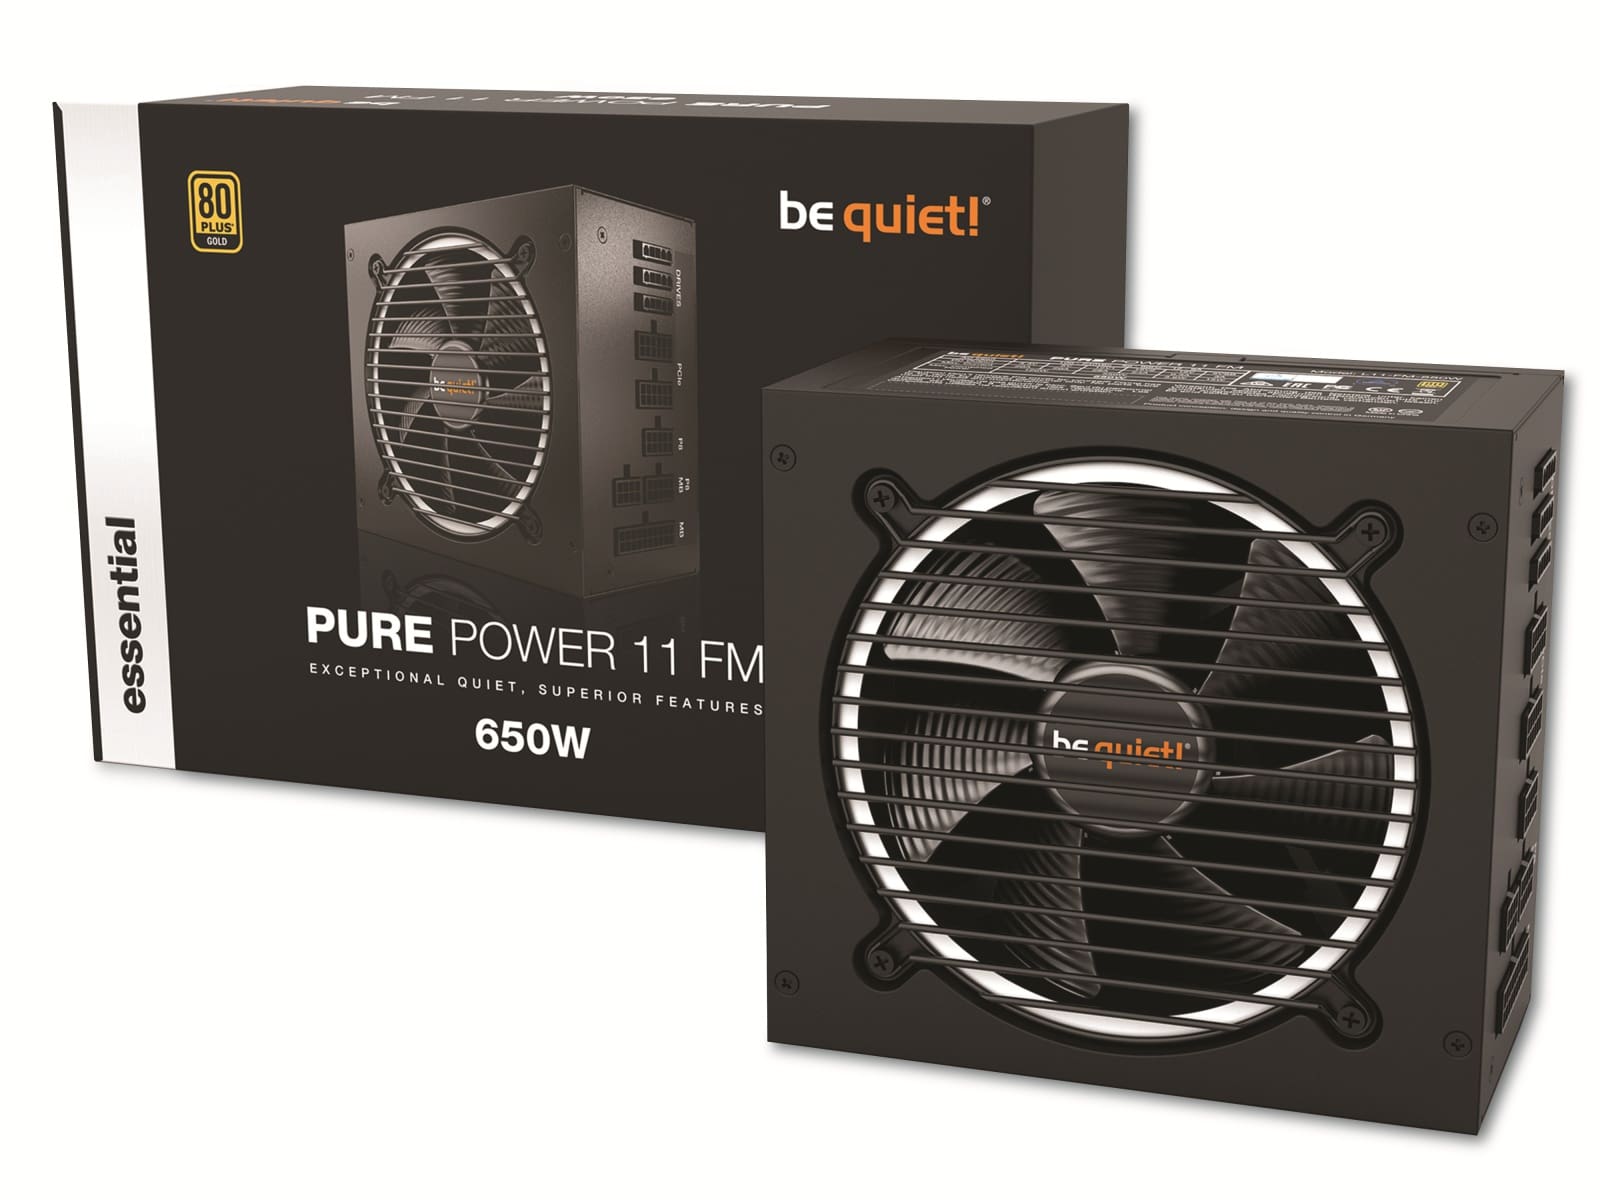  BE QUIET! PC-Netzteil Pure Power 11 FM, 650W, 80+ Gold, Kabelmanagement